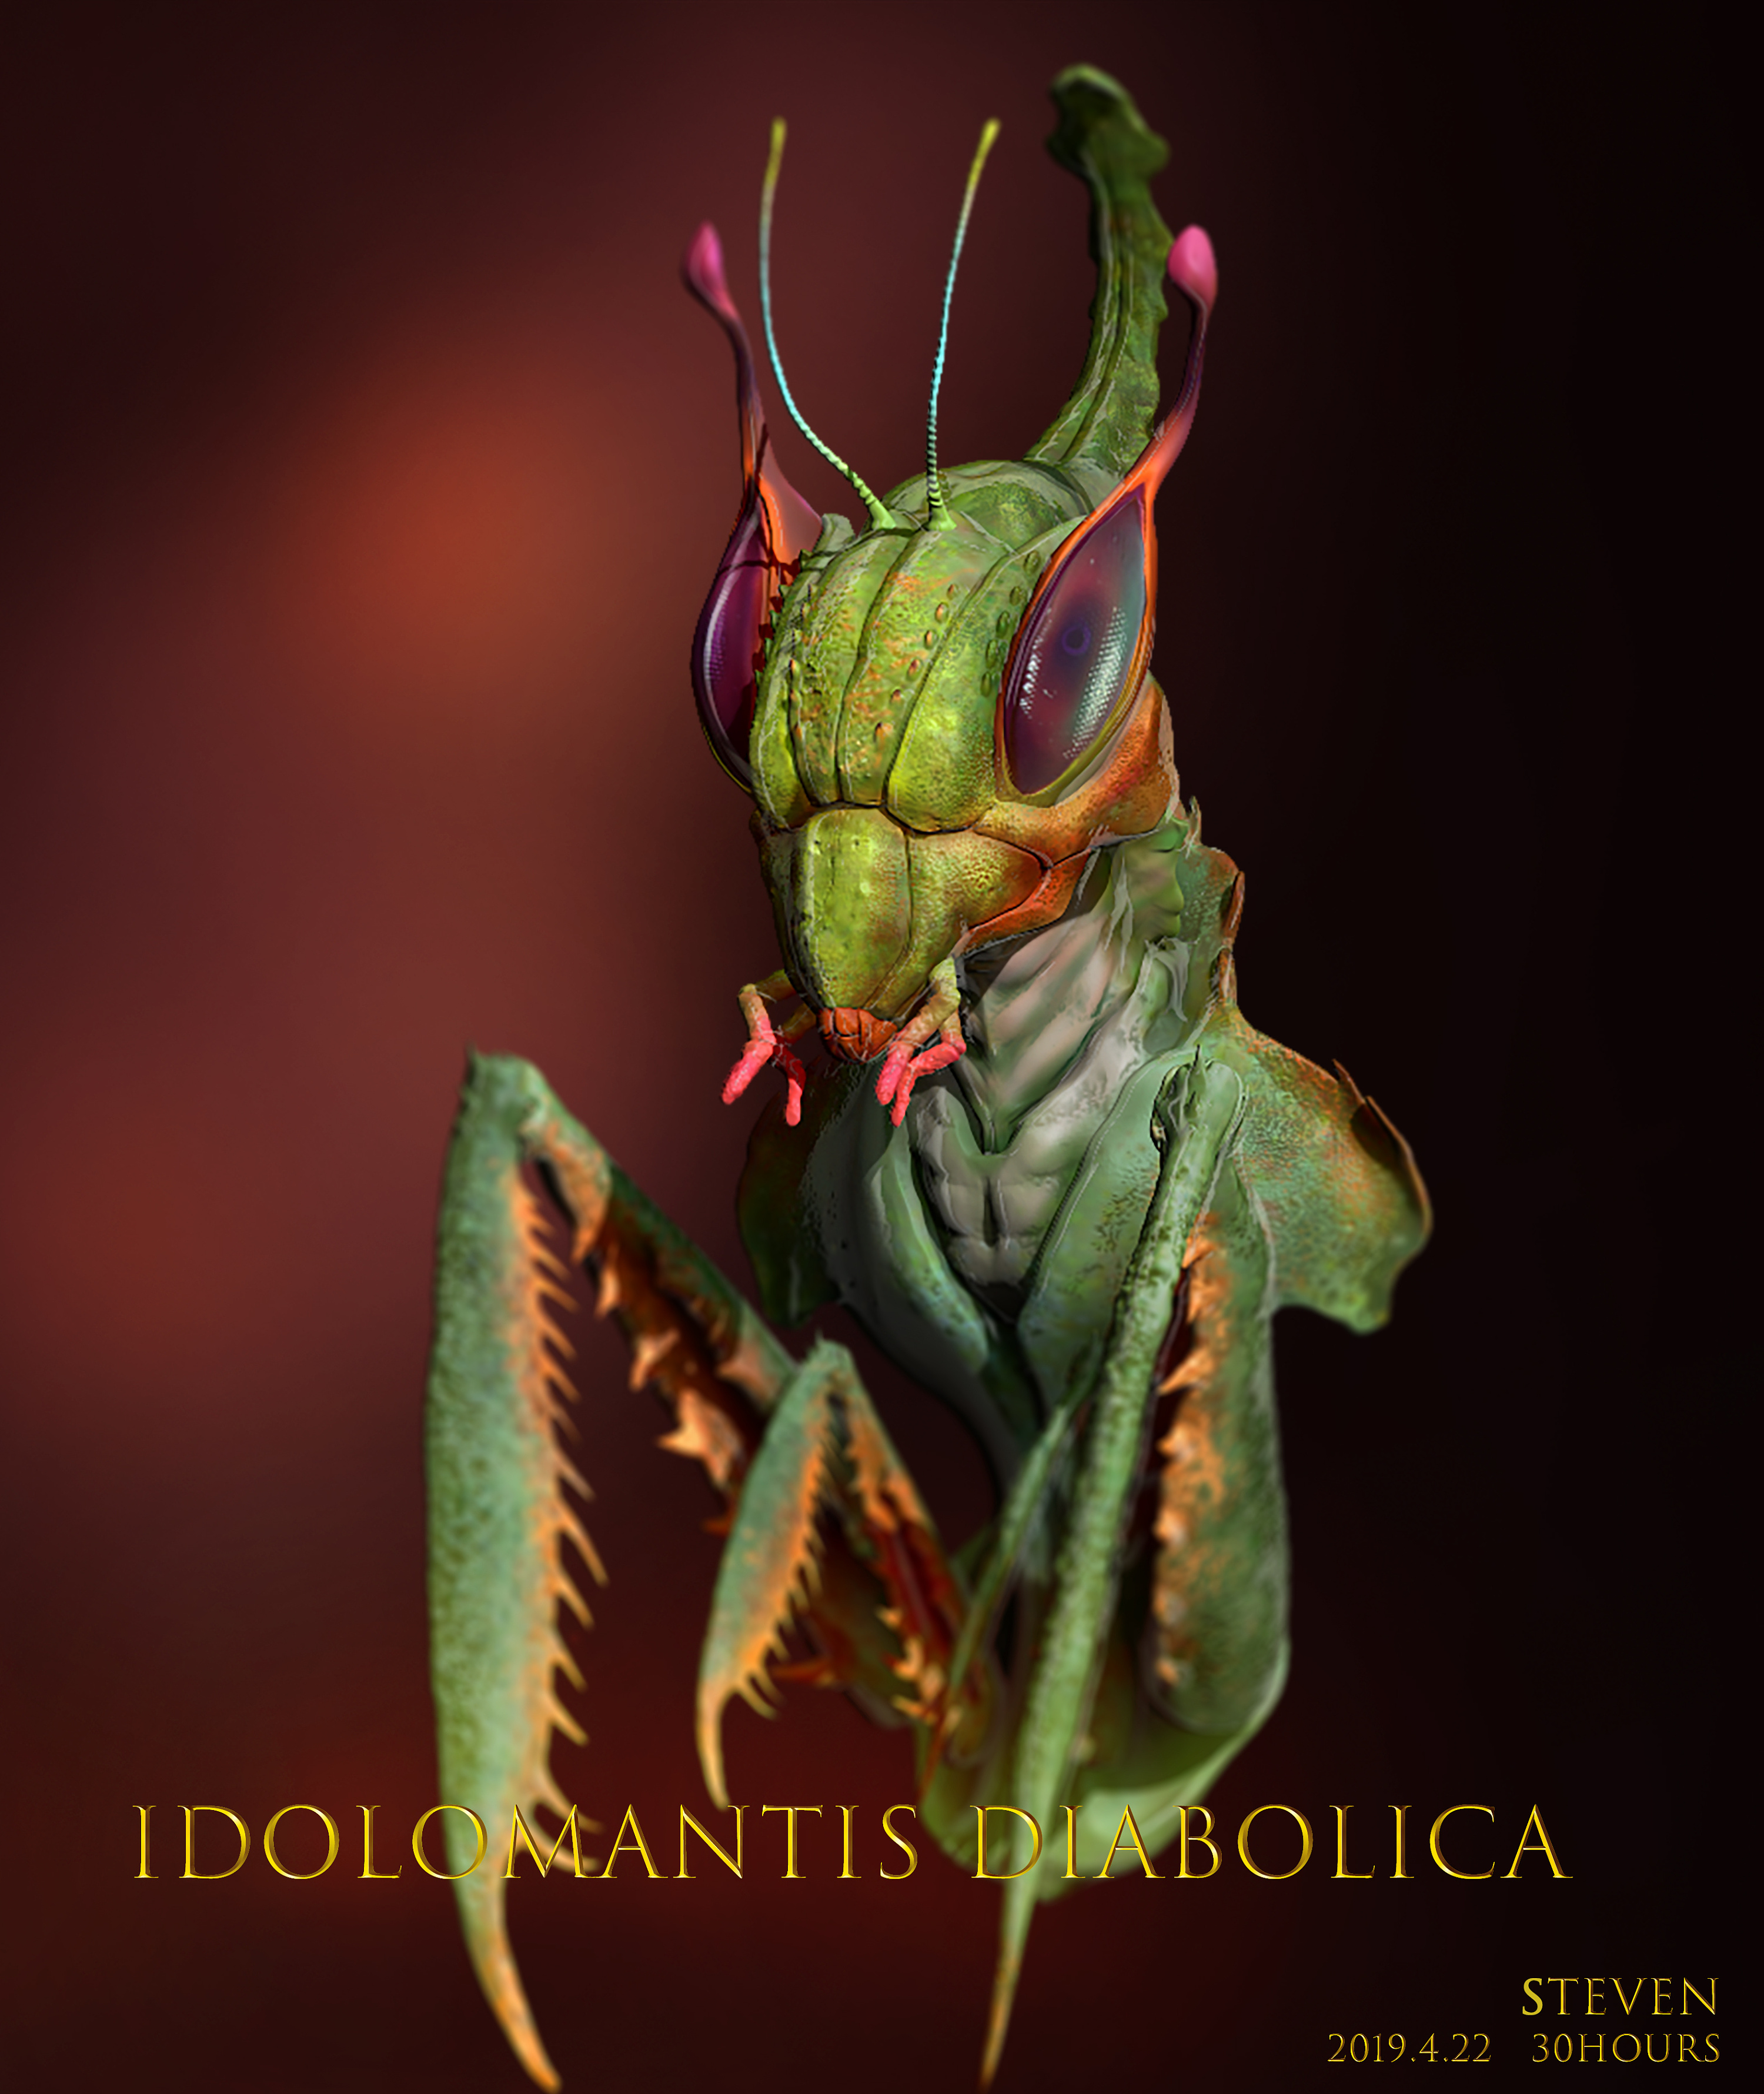 螳螂的别名恶魔图片